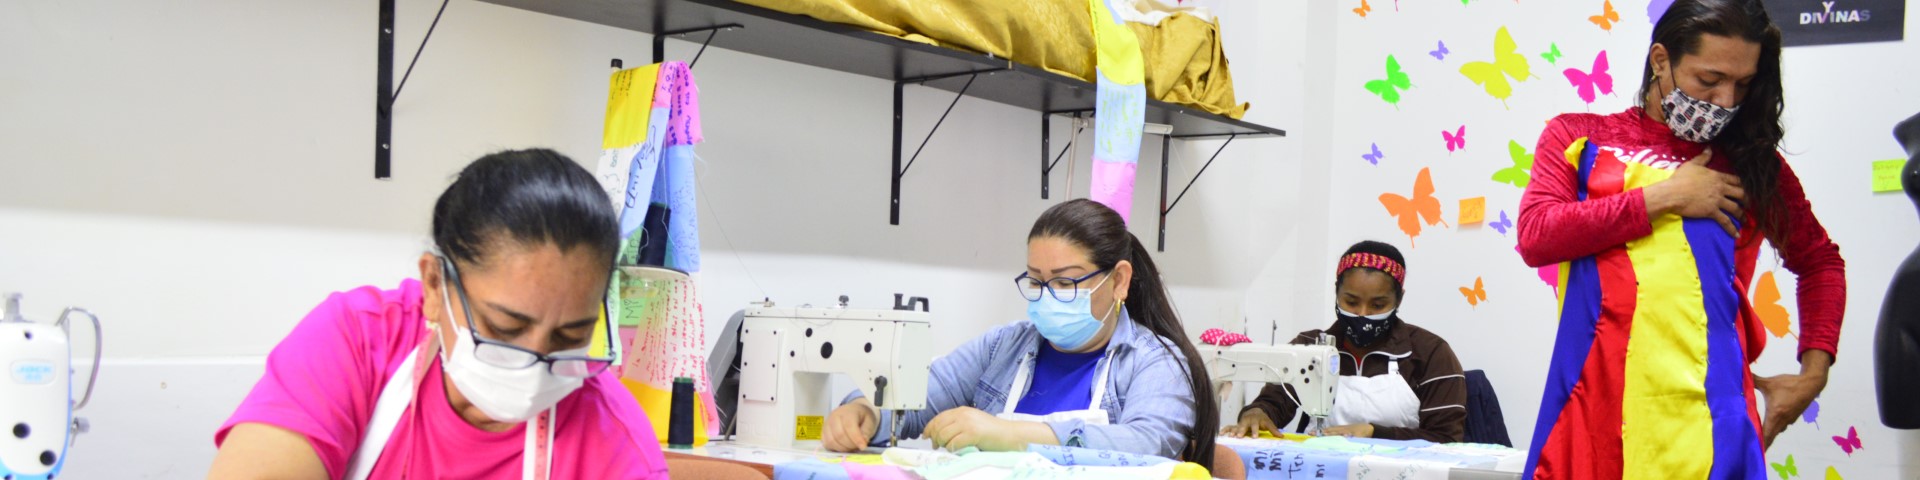 Varias mujeres trabajan con máquinas de coser, mientras una persona se prueba un vestido.